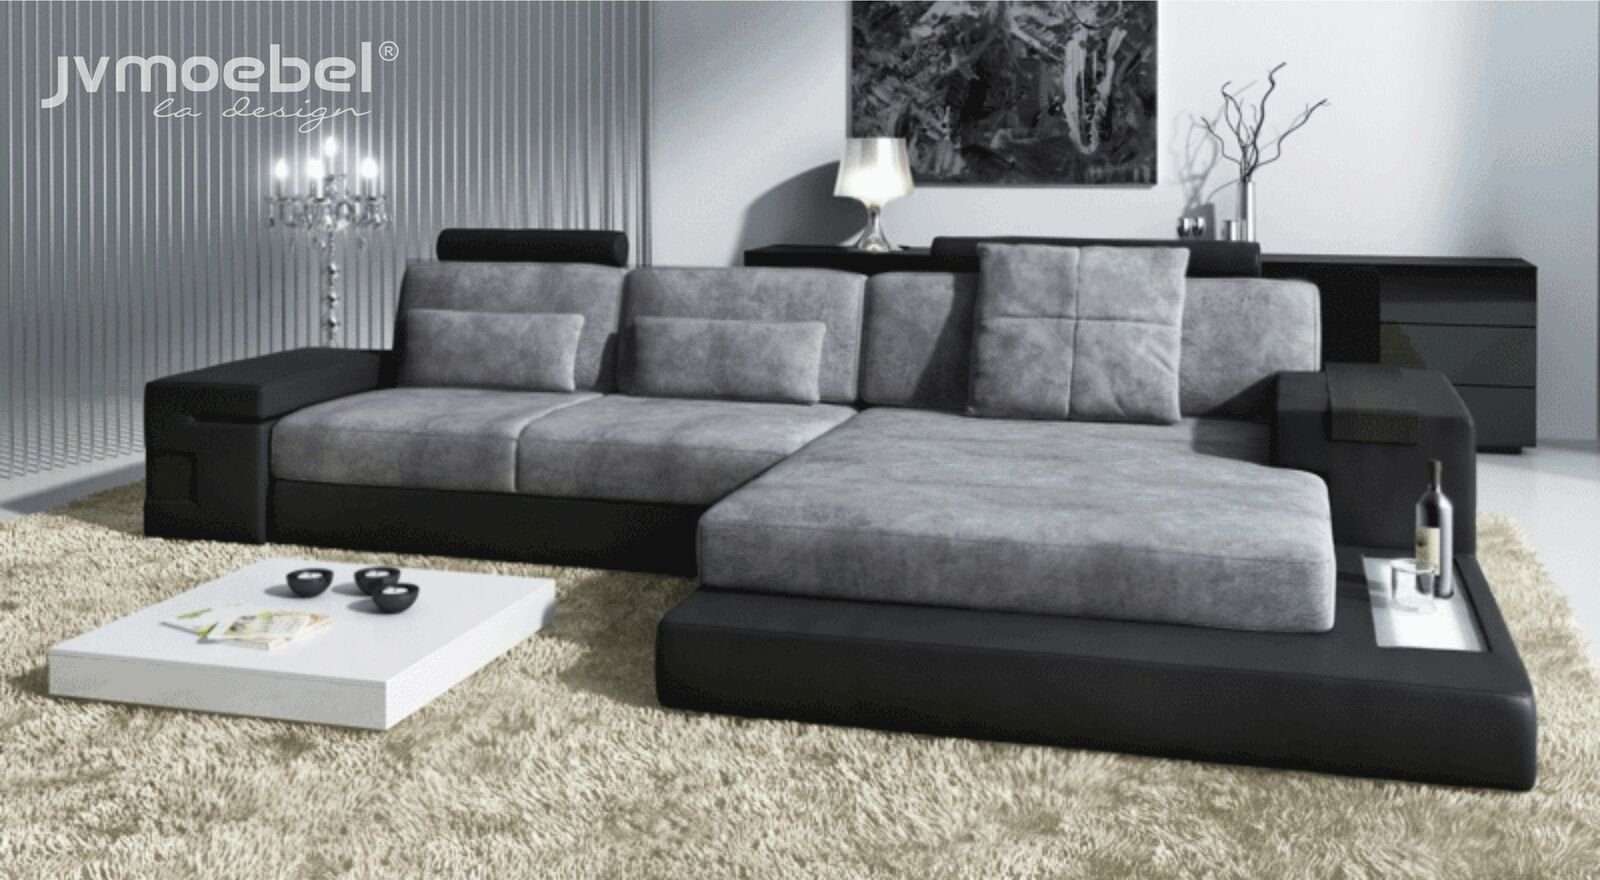 JVmoebel Ecksofa Ecksofa Wohnzimmer L-Form Polster Sofa TextilLeder Design, Made in Europe Grau/Schwarz